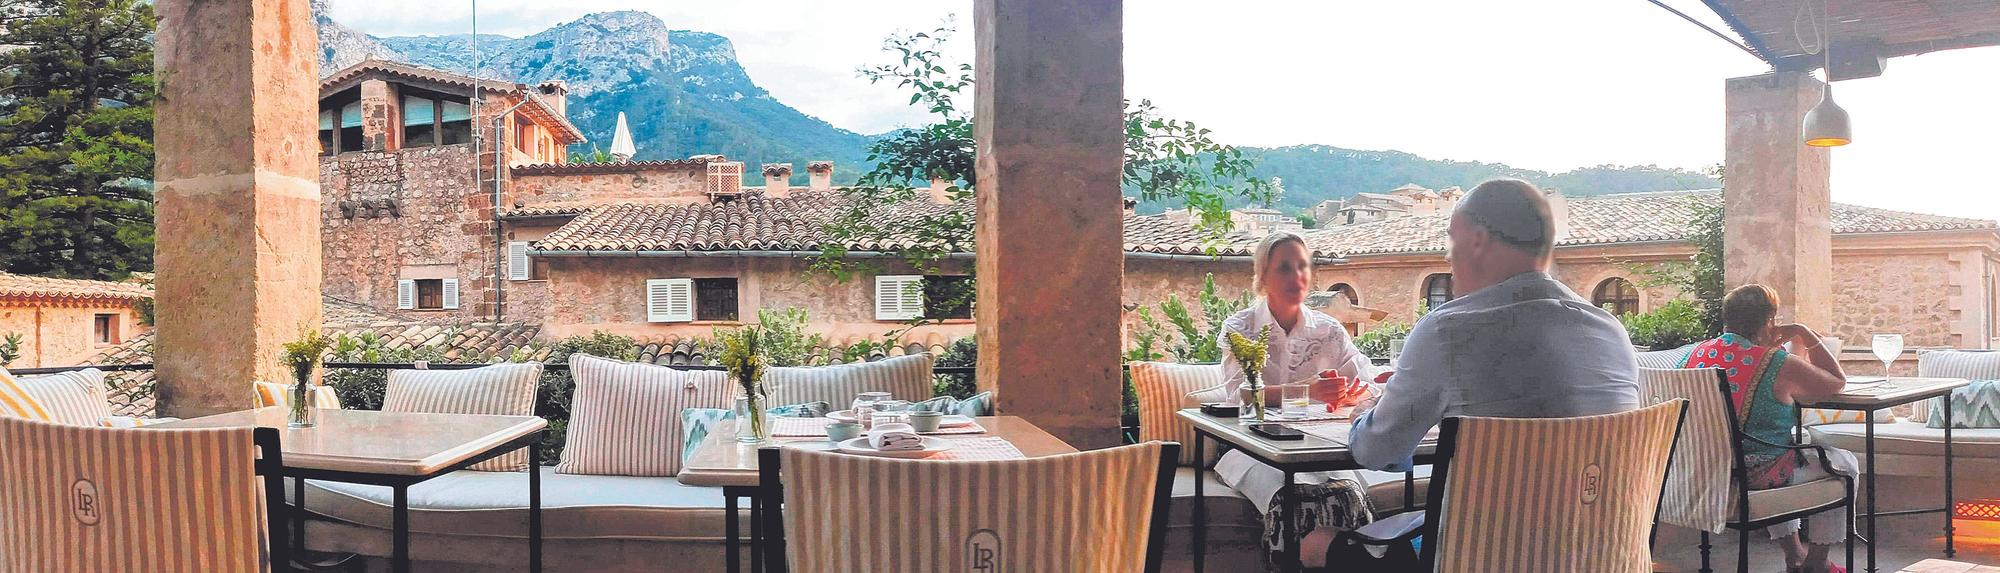 La Residencia, el hotel de Belmond en Deià cuenta con un nuevo espacio gastronómico bautizado Tramuntana Grill.